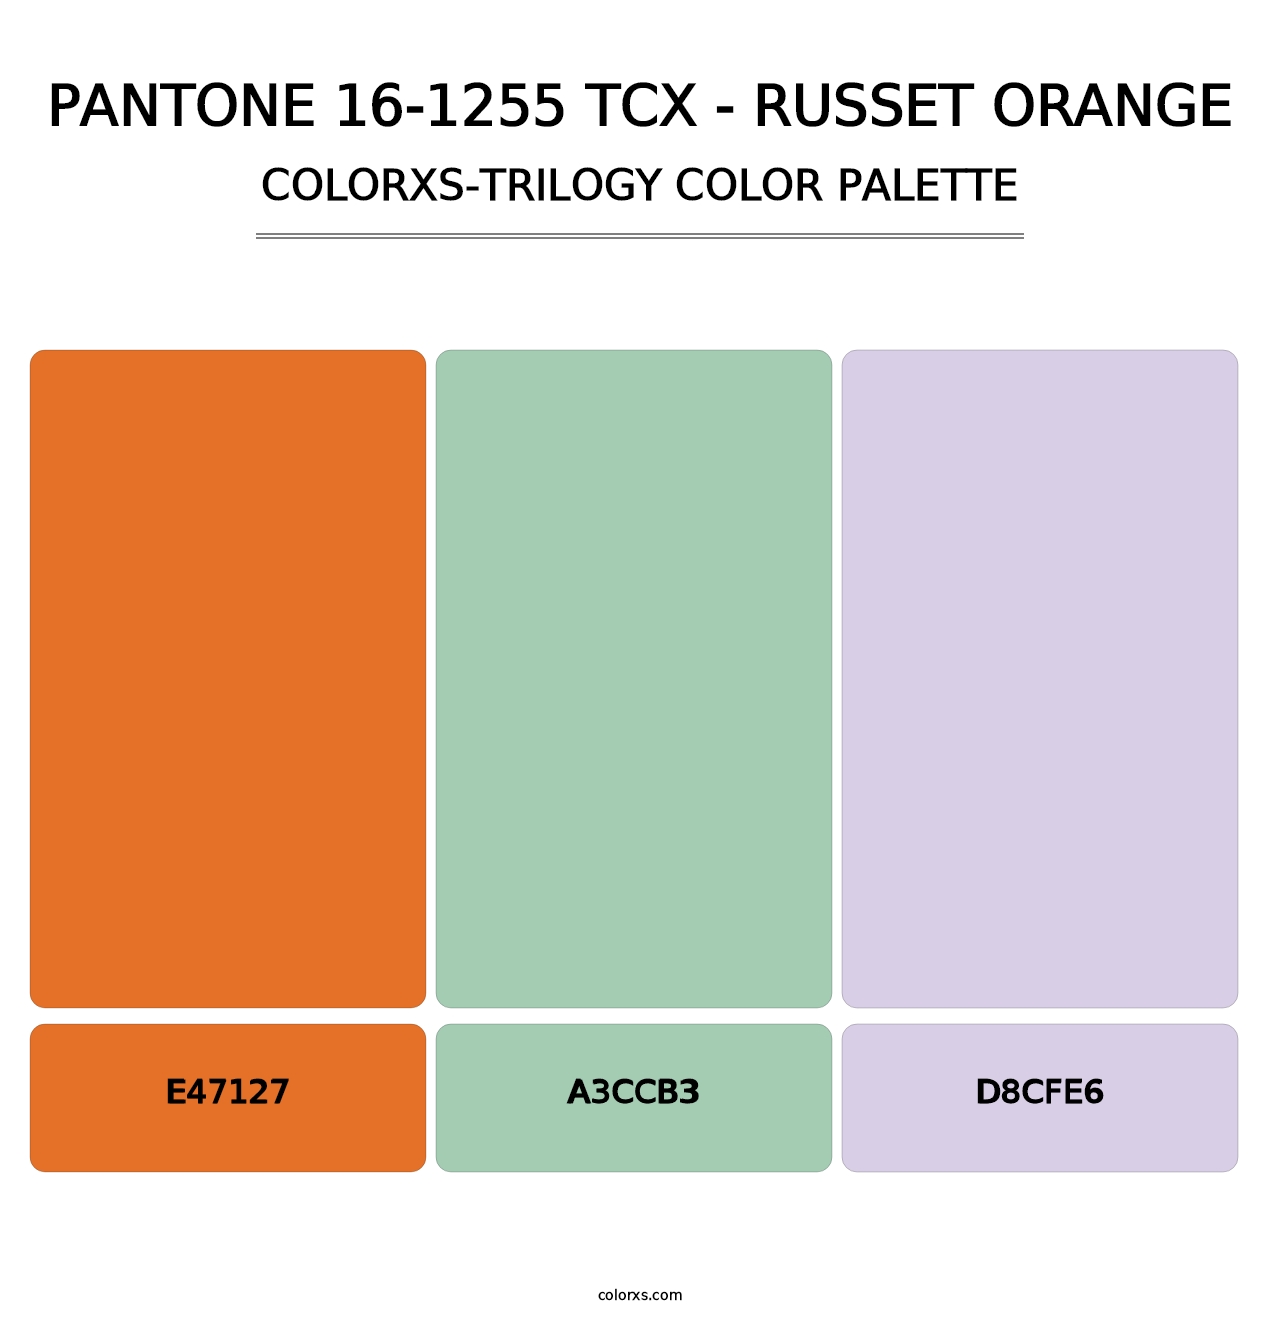 PANTONE 16-1255 TCX - Russet Orange - Colorxs Trilogy Palette